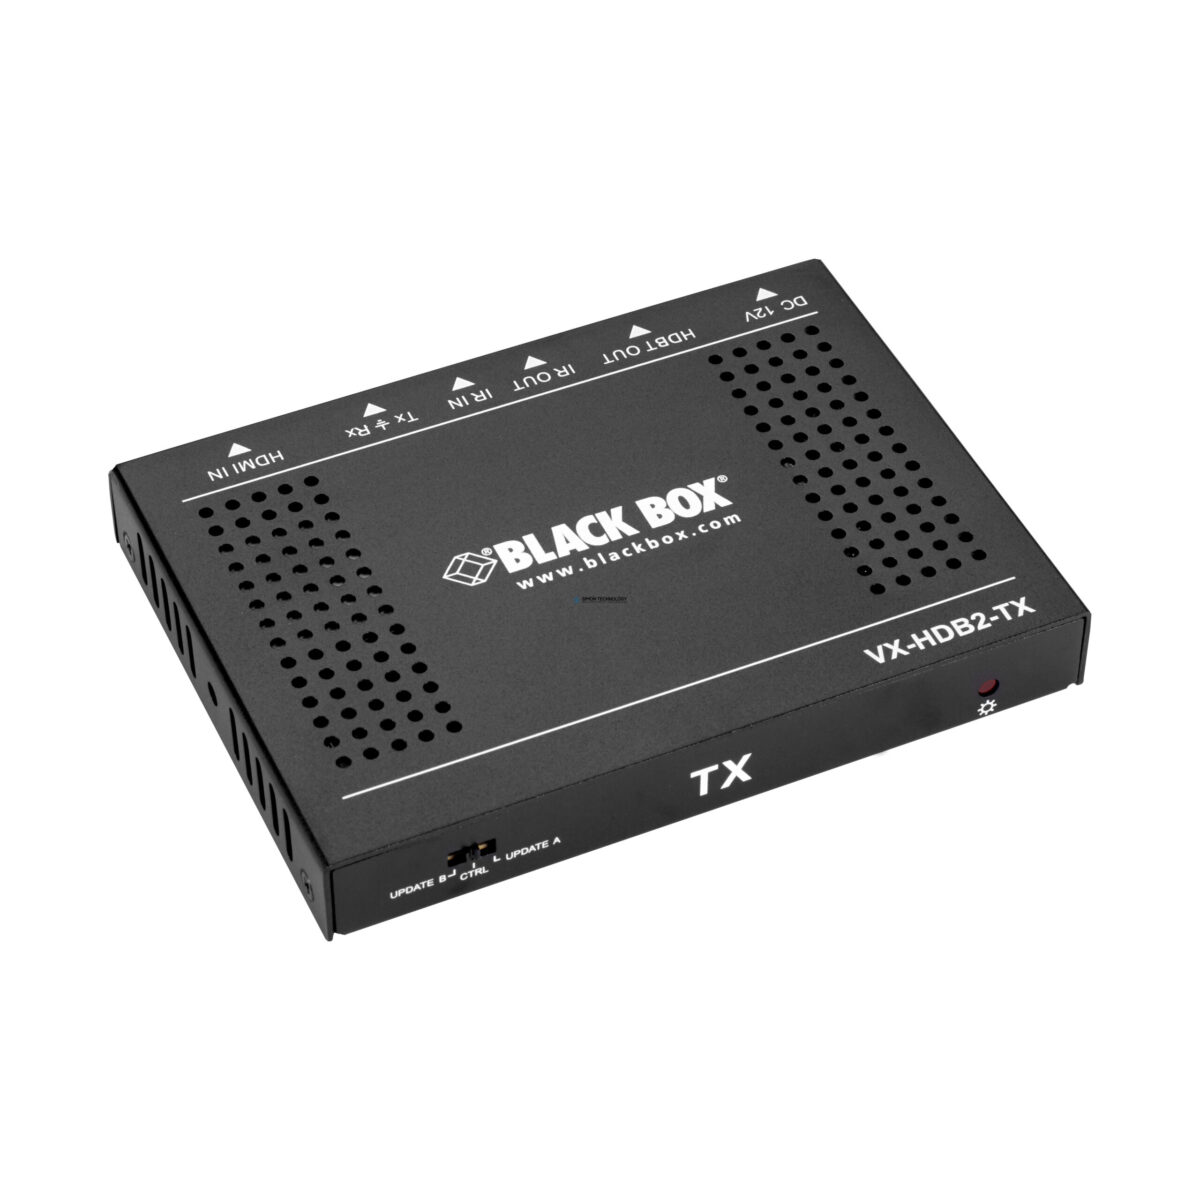 Black Box HDMI 2.0 4K 60Hz 4 4 4 HDRHDBaseT VIDEO (VX-HDB2-TX)